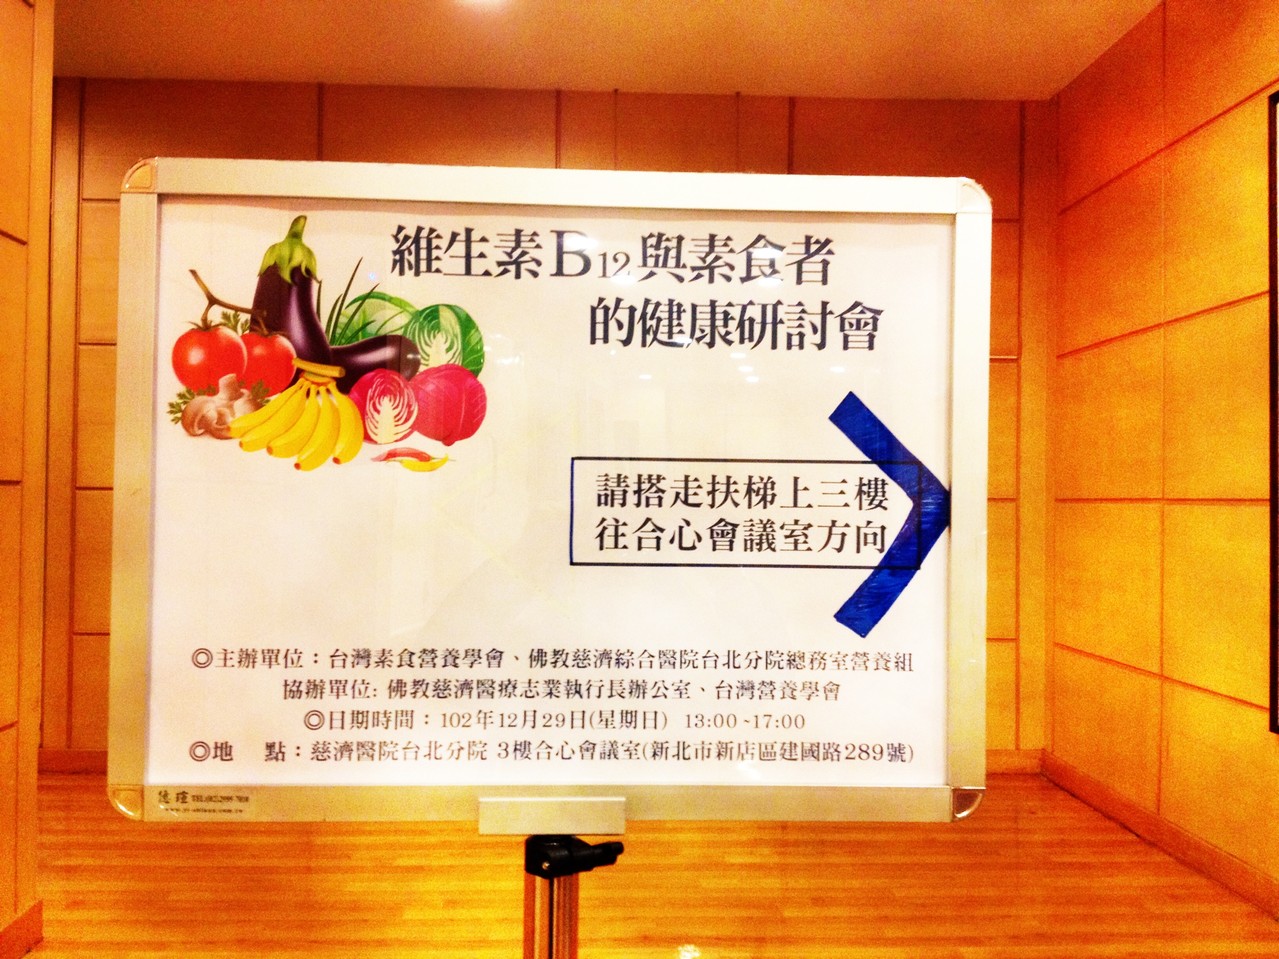 台灣素食營養學會 維生素B12 與素食者的健康研討會  2013.12.29